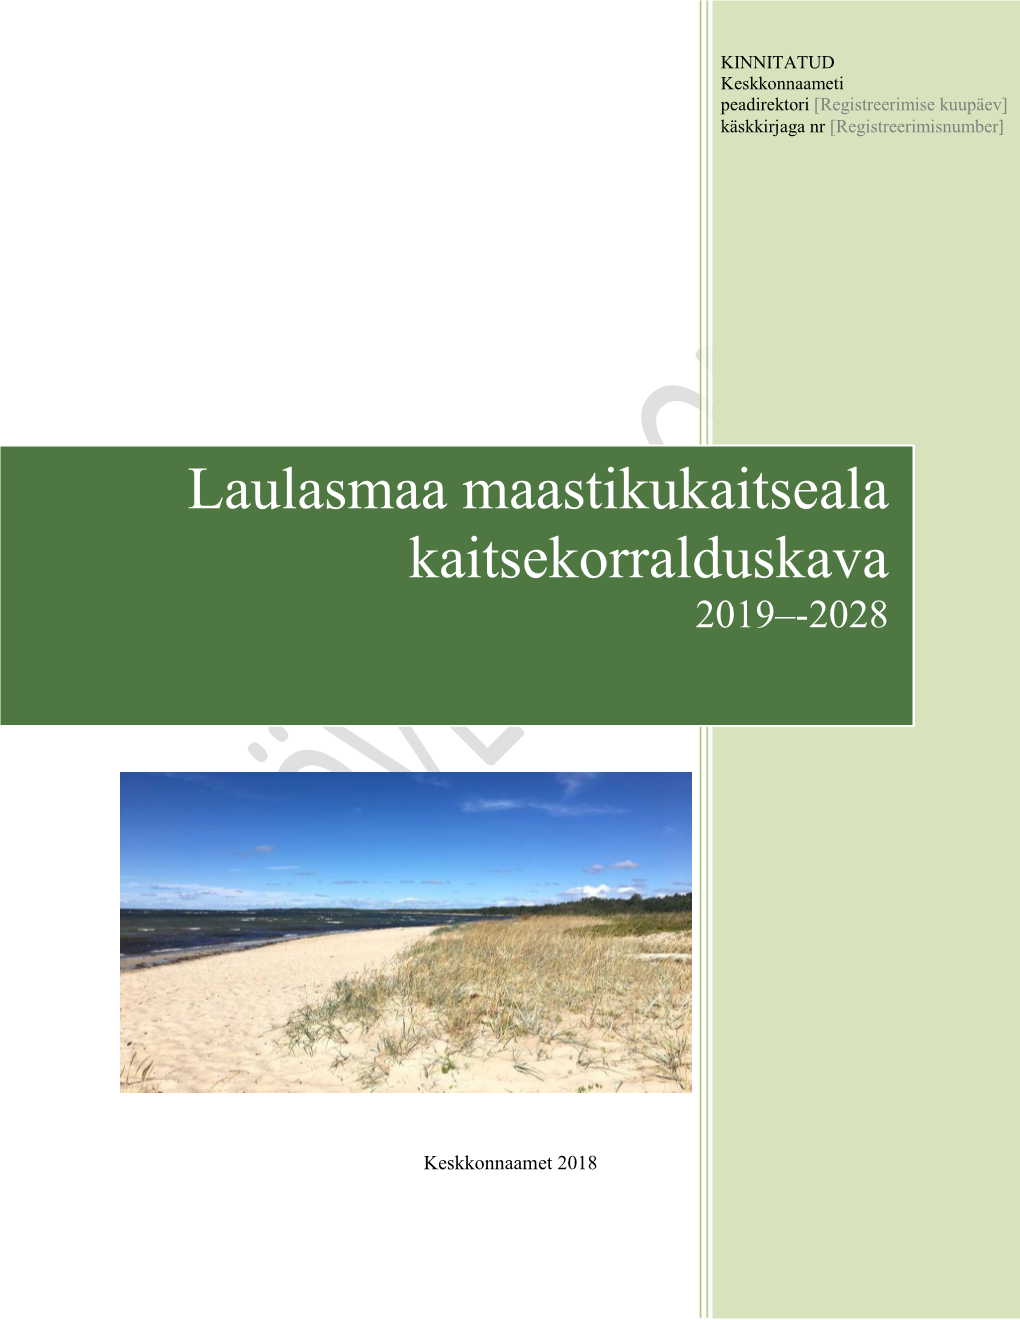 Laulasmaa Maastikukaitseala Kaitsekorralduskava 2007‒2016)